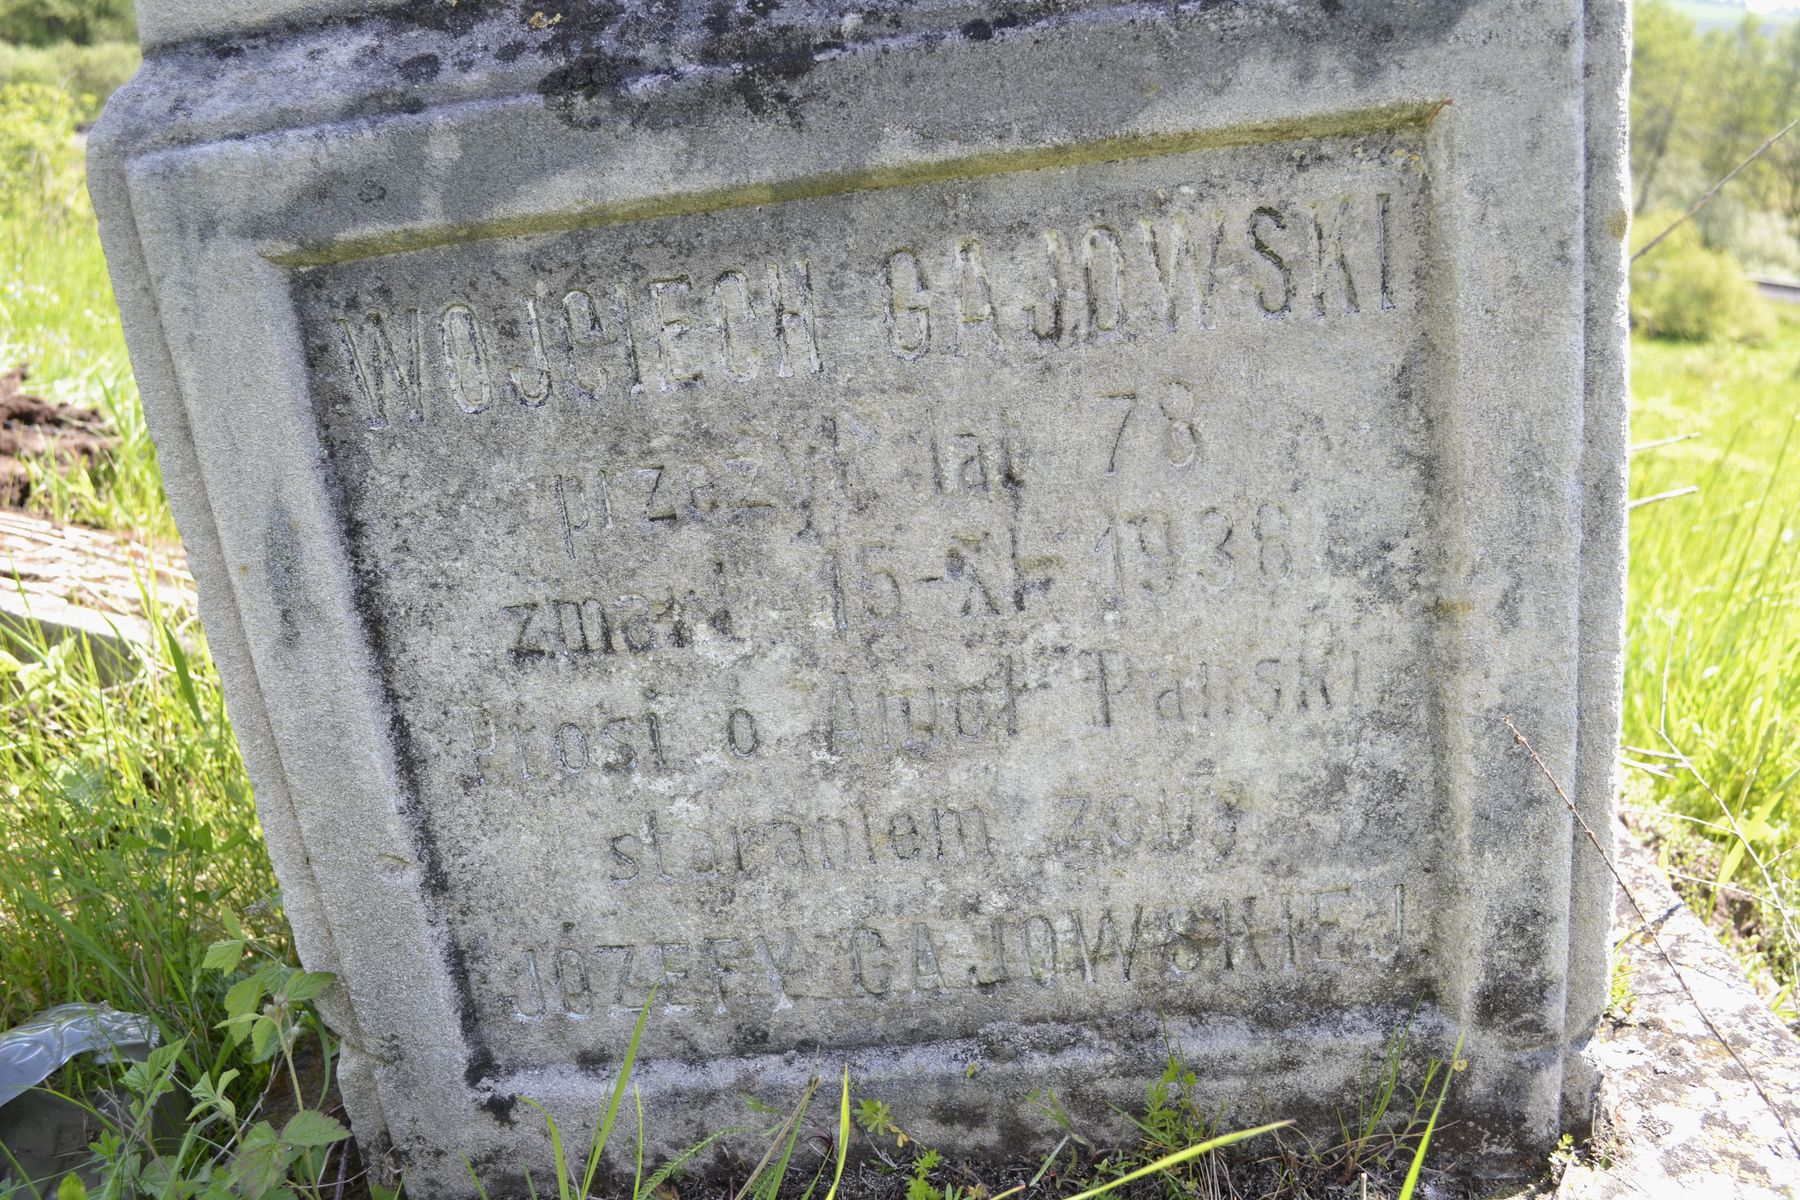 Inscription from the gravestone of Wojciech Gajowski, cemetery in Łozowa